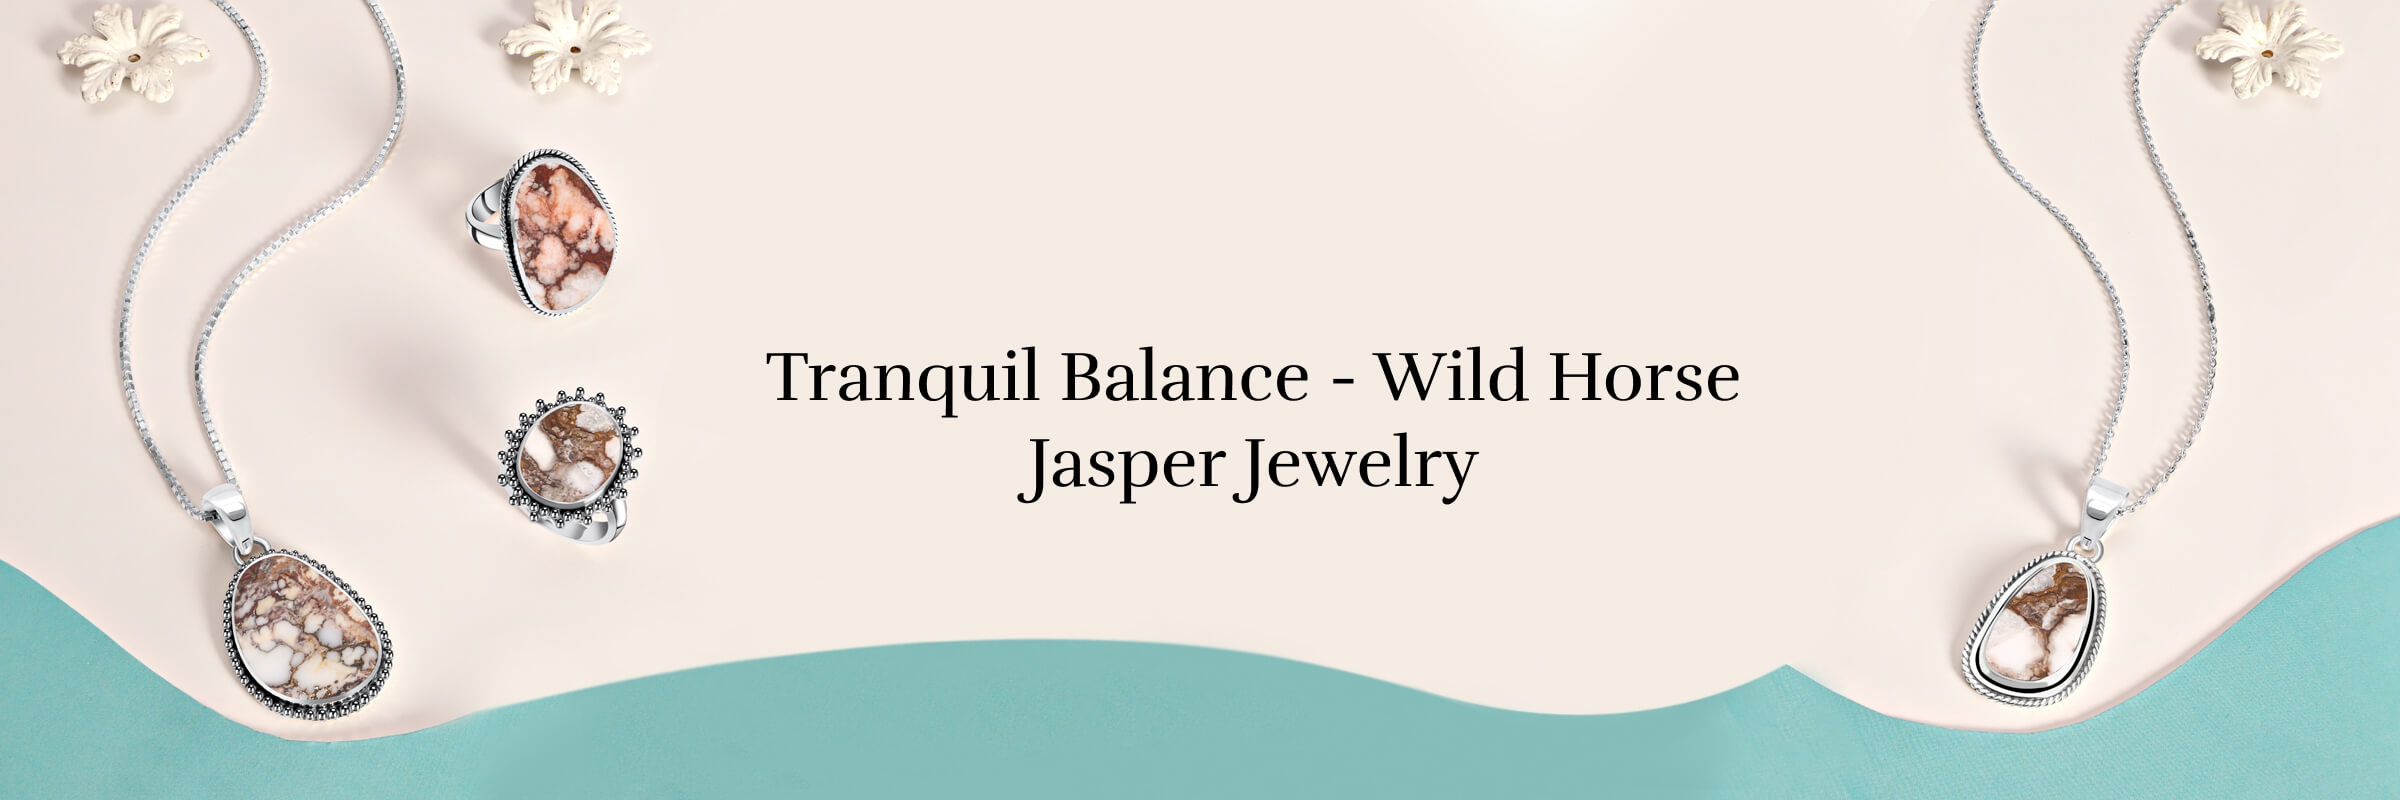 Wild Horse Jasper Jewelry